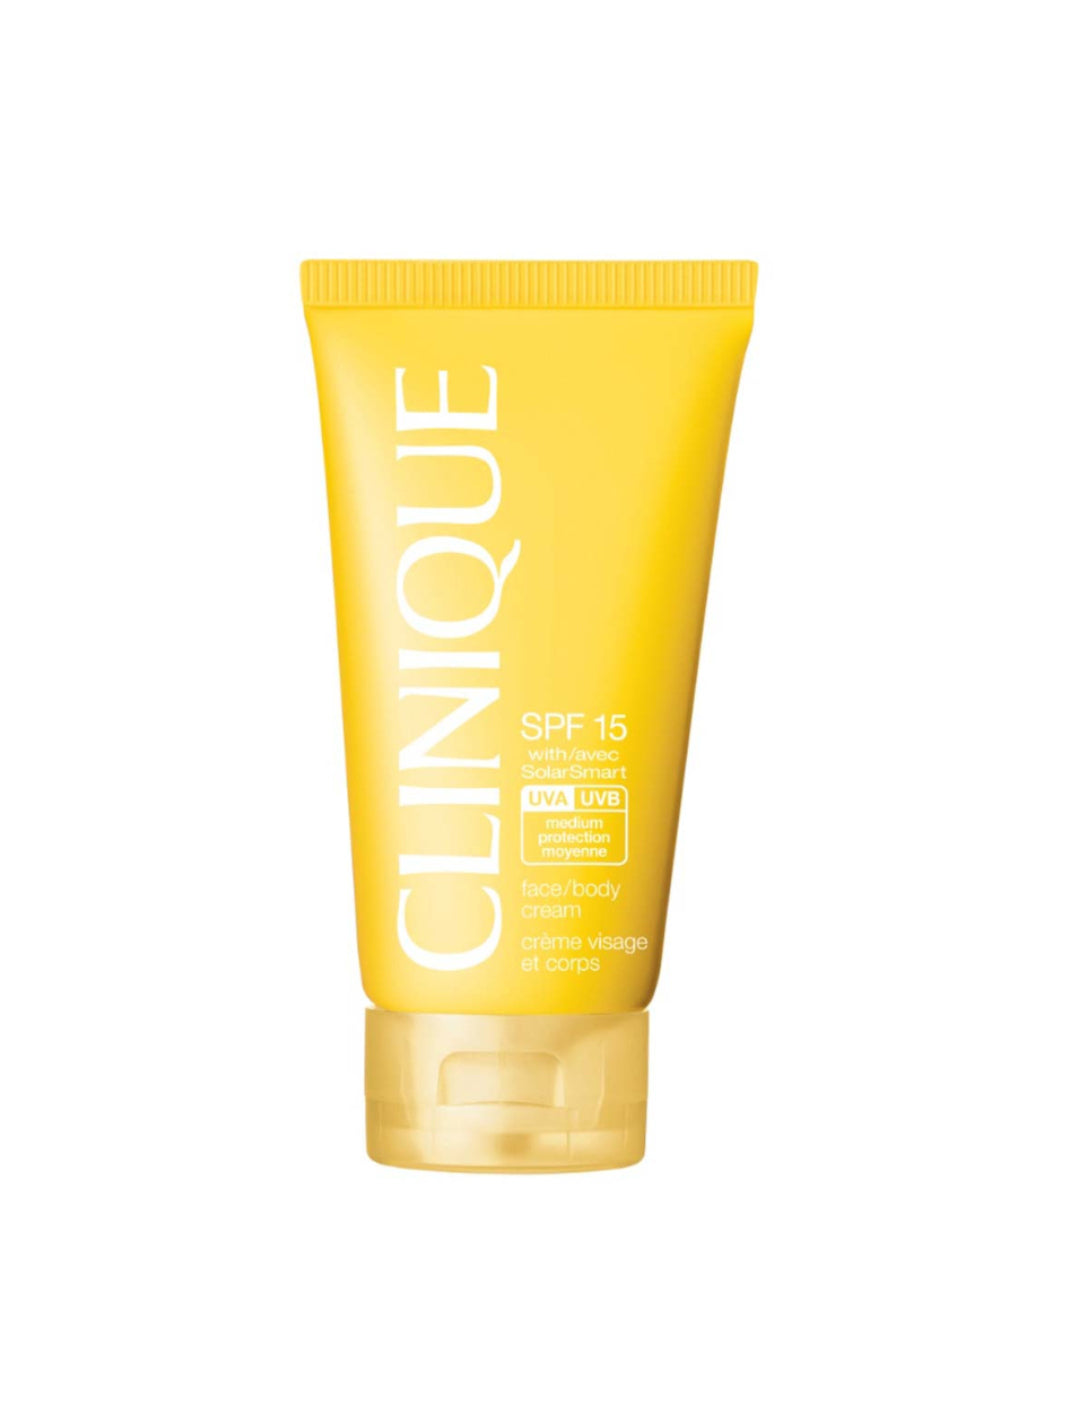 Clinique Face/body cream SPF15 - Crema protettiva viso/corpo